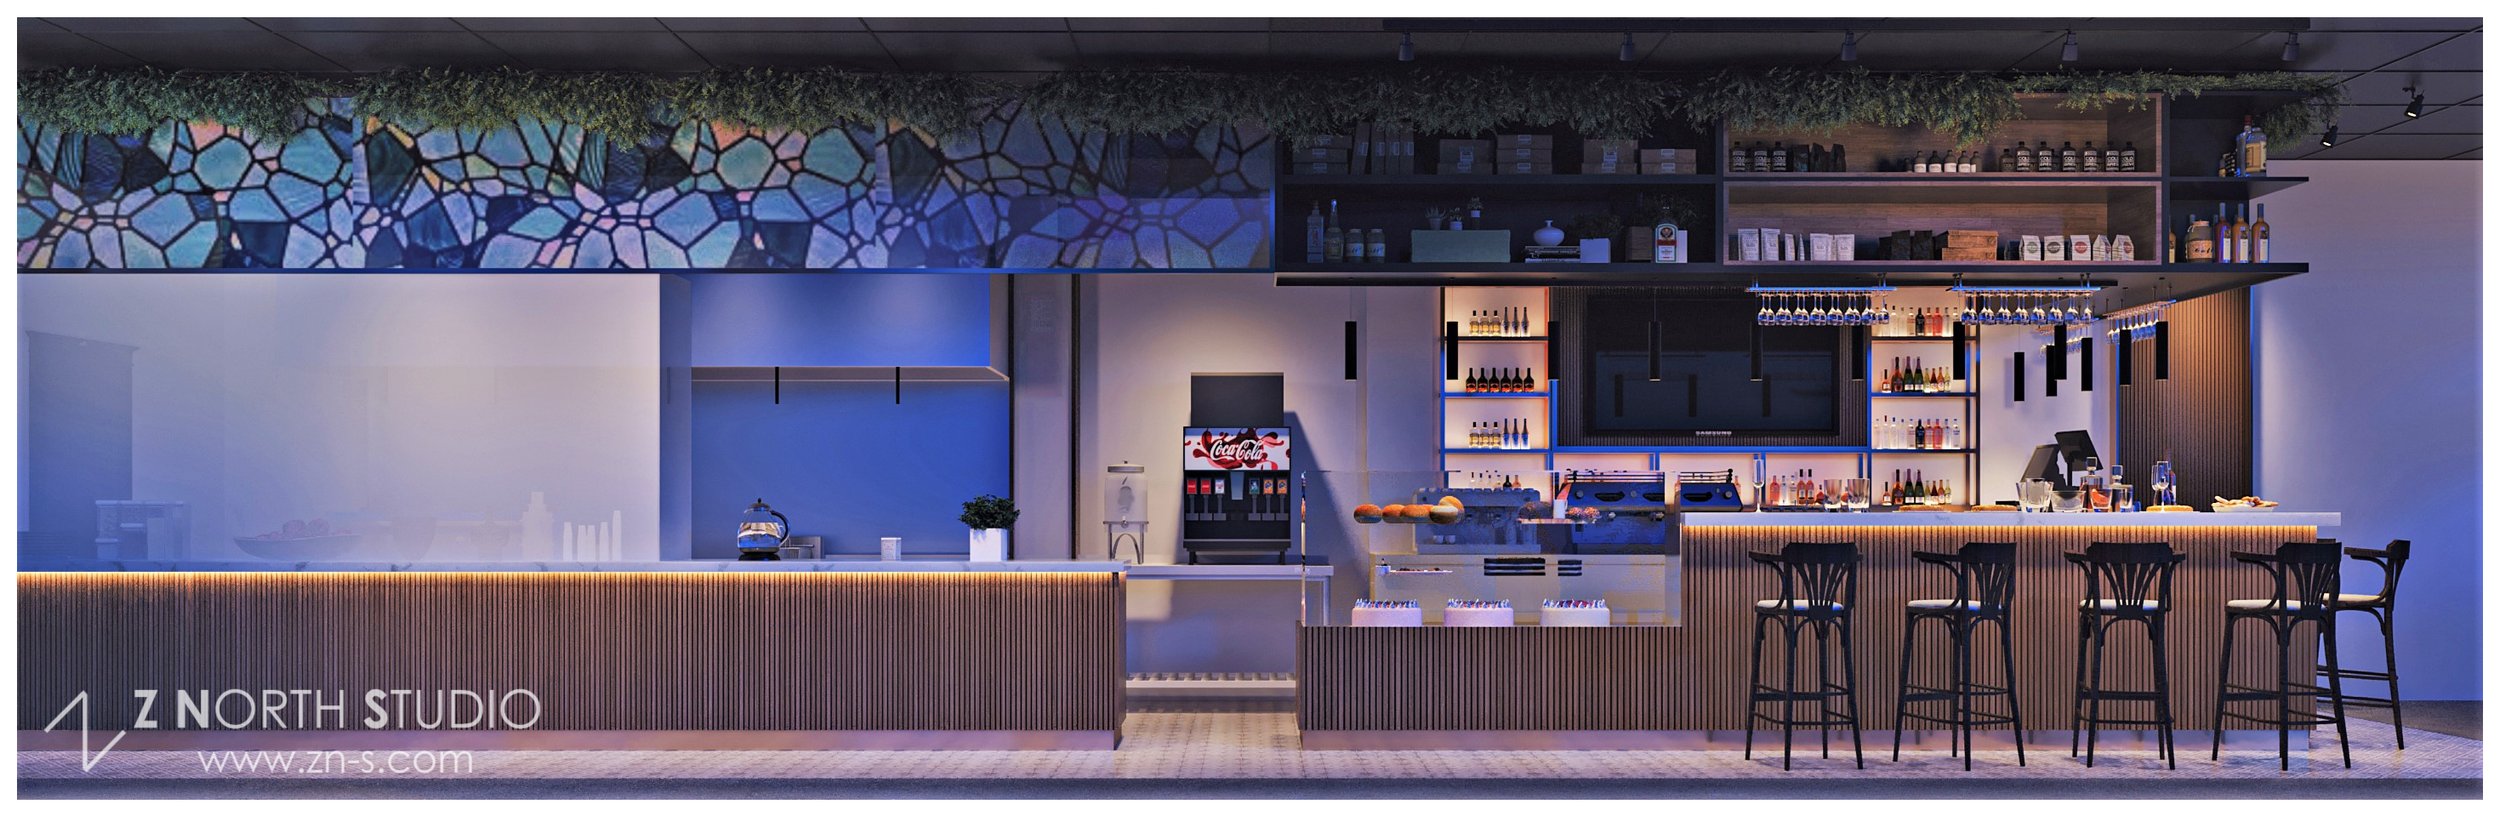 Pan Am Restaurant Interior Design Z North Studio  Virgina Bar (5).jpg